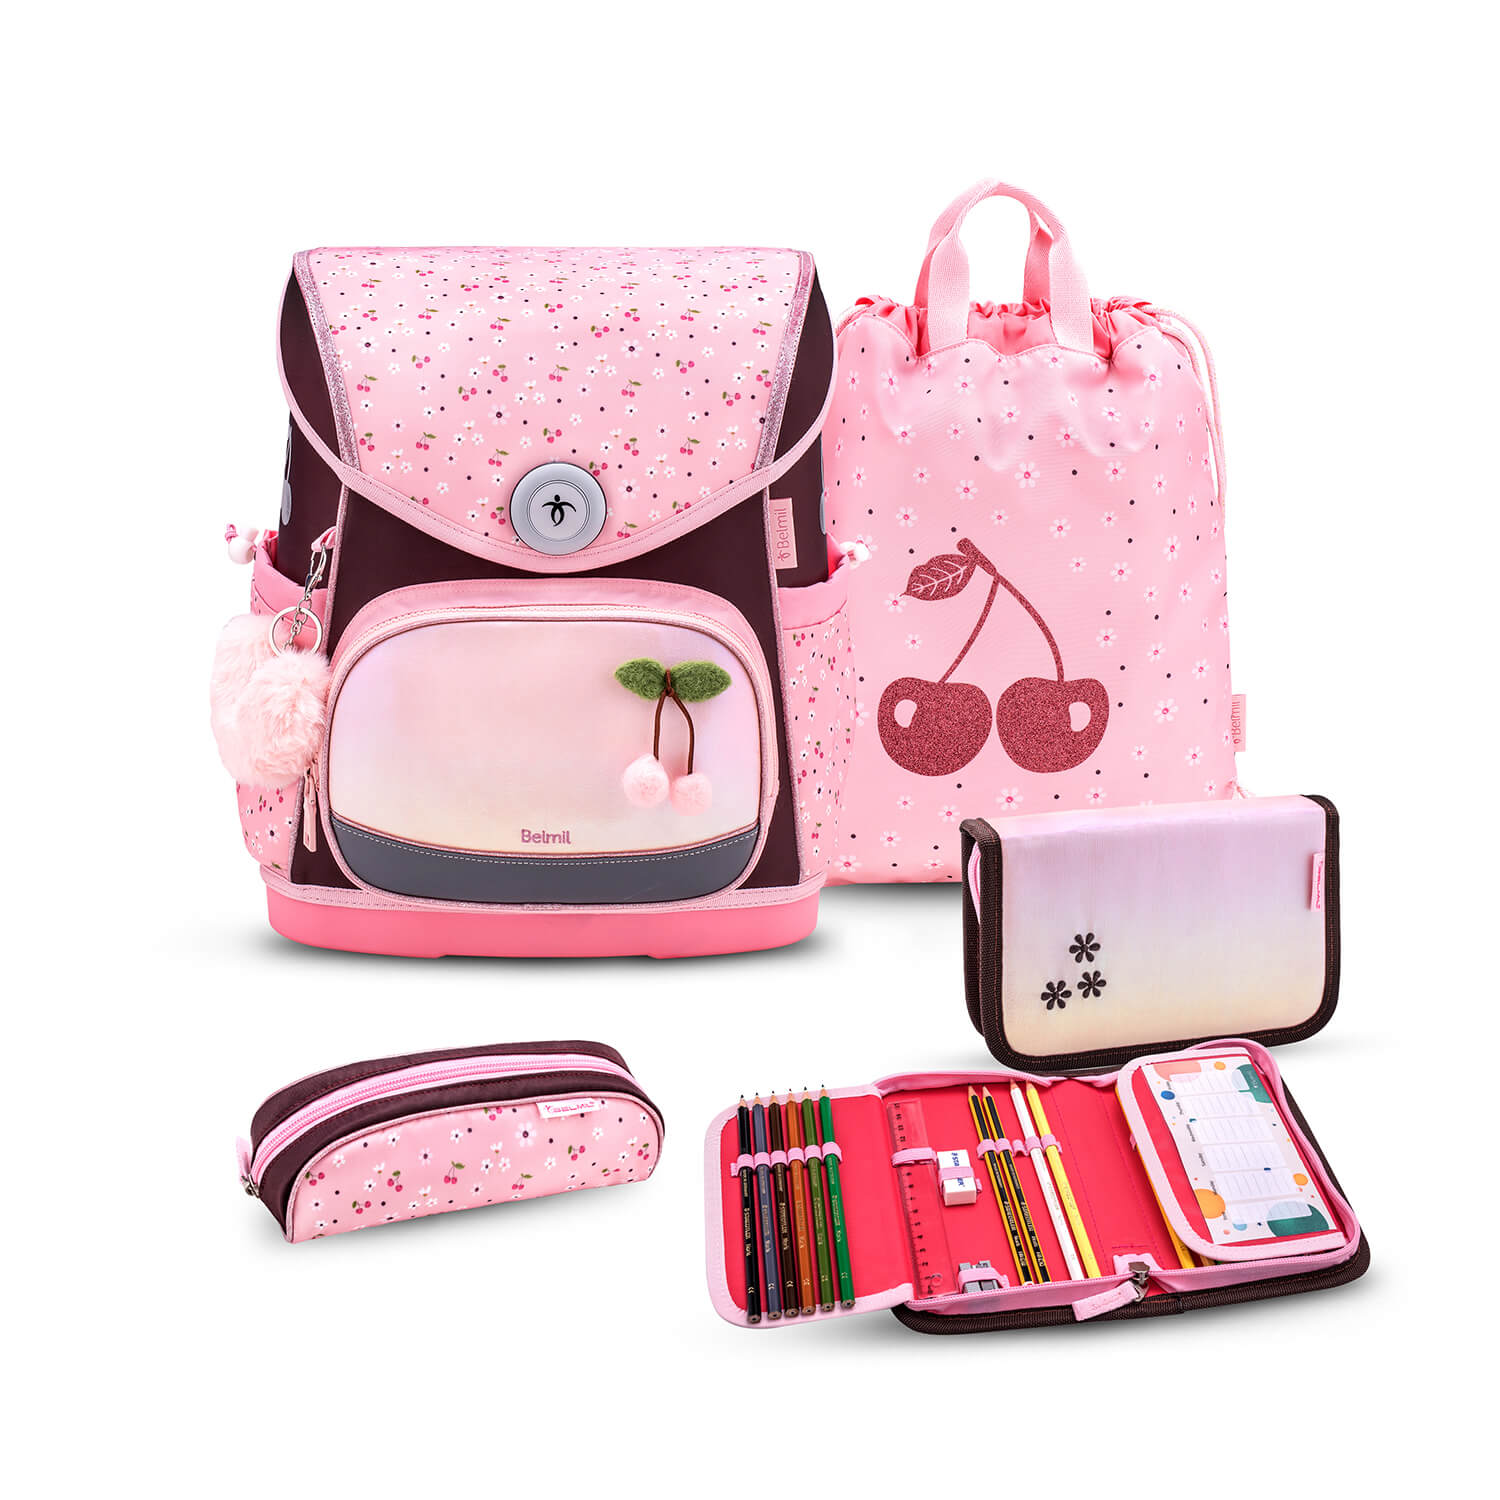 Premium Compact Plus Cherry Blossom Schoolbag set 5pcs.